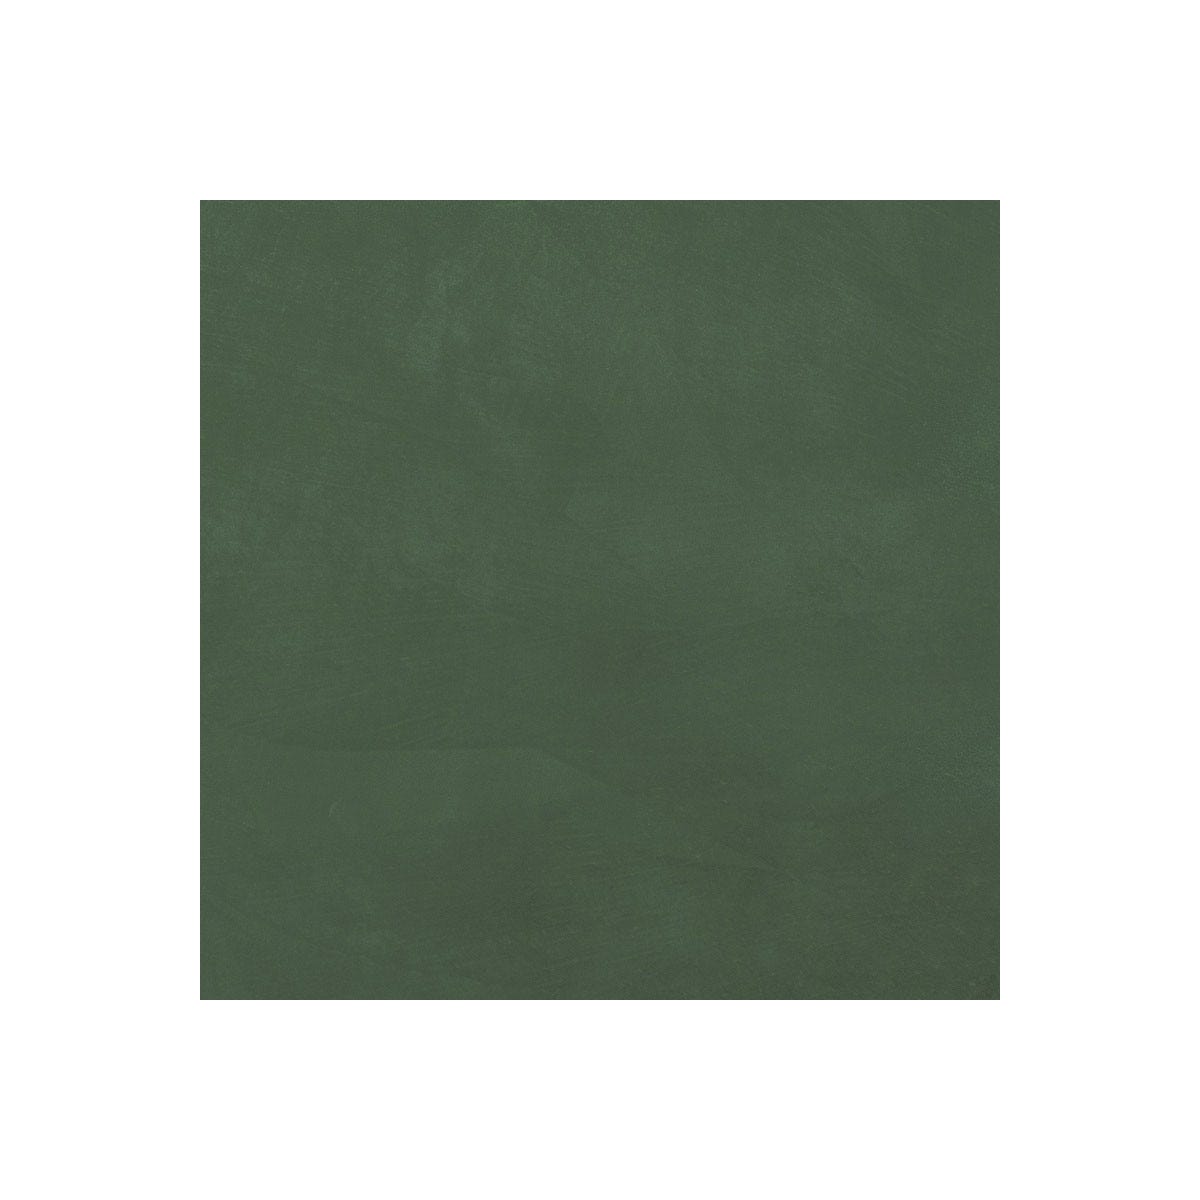 Béton Ciré Sol en - Primaire et vernis de finition inclus - 2 m² (en 2 couches) - Carambole Vert - ARCANE INDUSTRIES 5